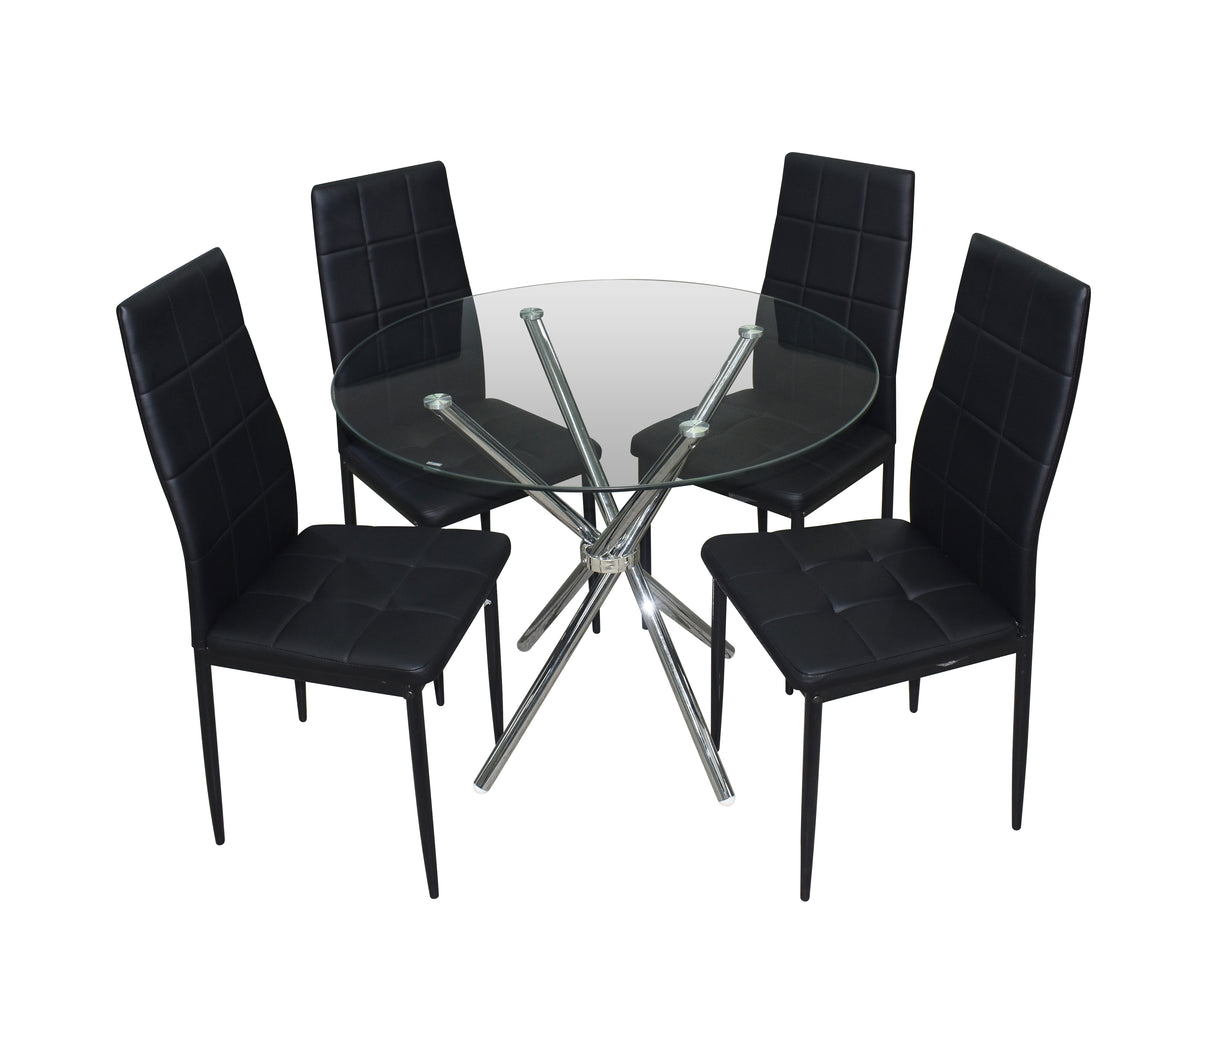 Comedor estrella redondo de 4 sillas negras cromado Dj Muebles